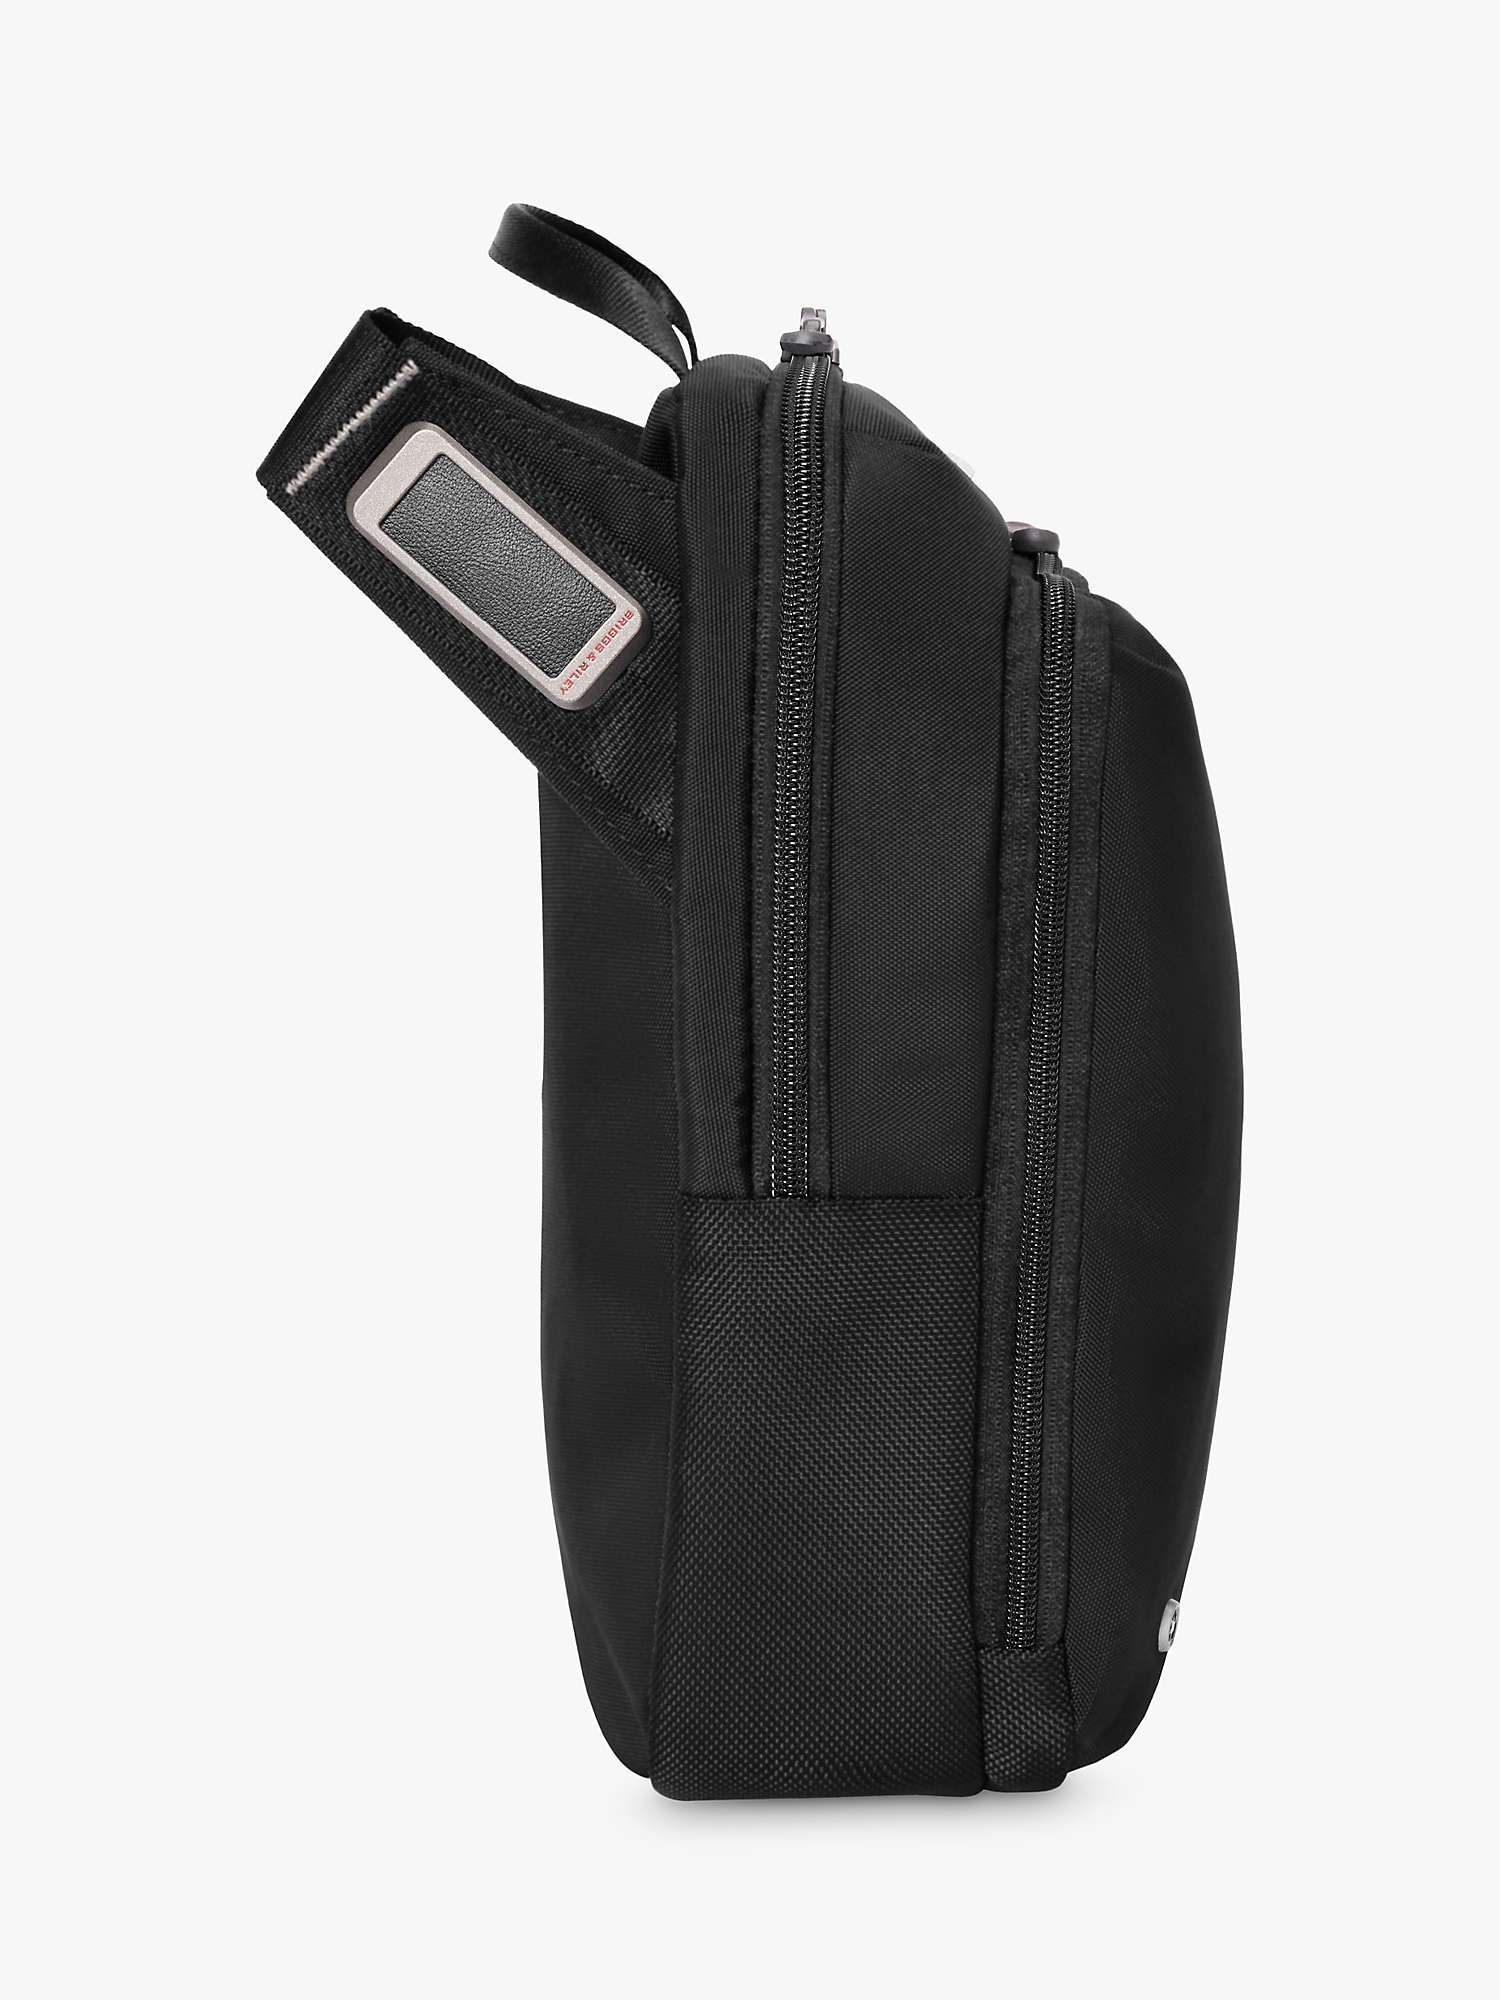 Buy Briggs & Riley HTA Cross Body Bag, Black Online at johnlewis.com